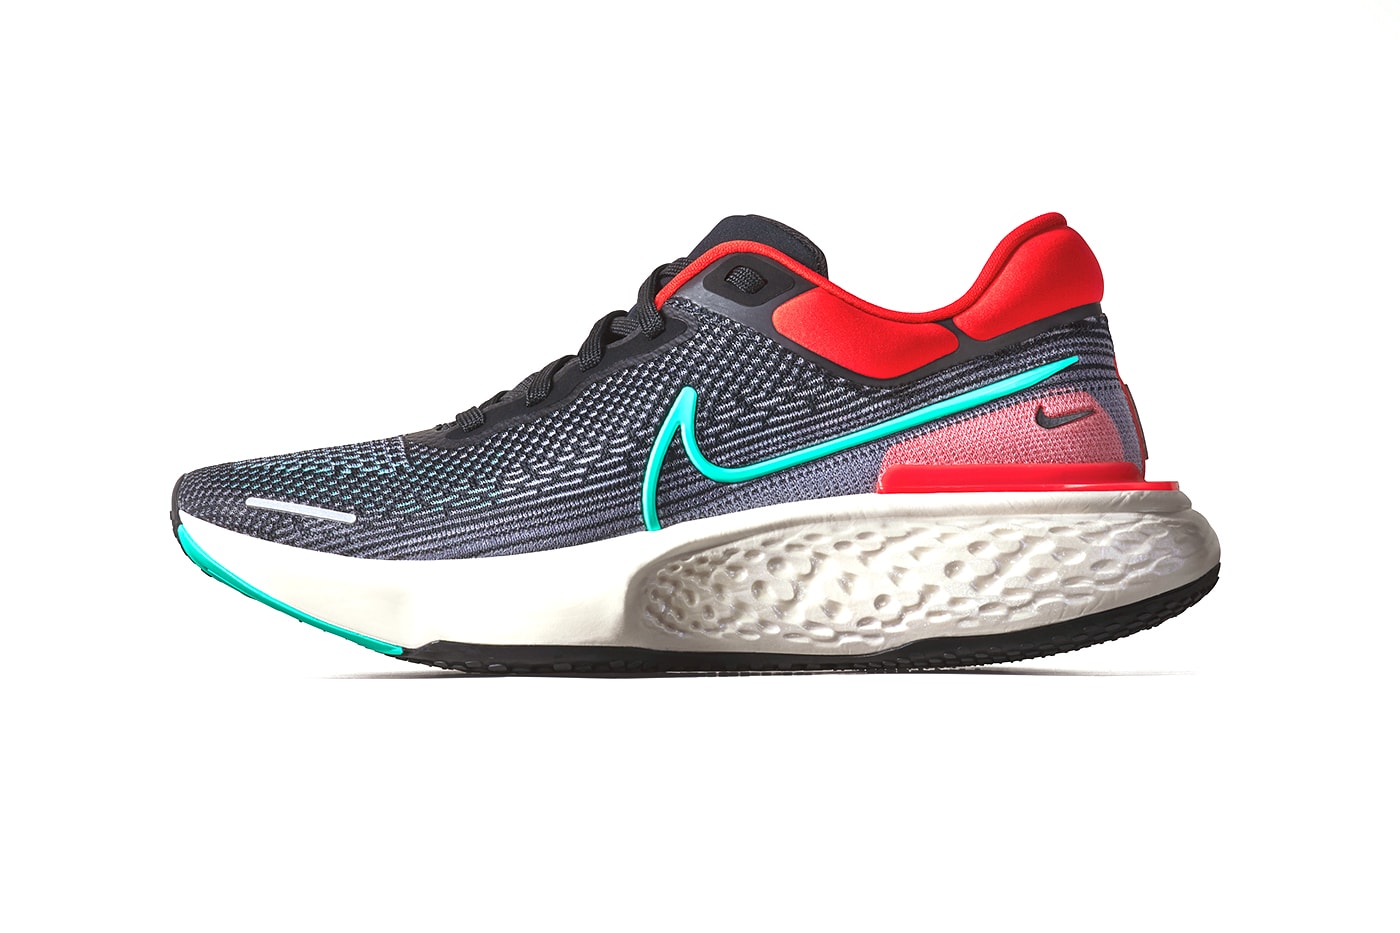 率先預覽 Nike 全新跑步鞋型 React Infinity Run 2 與 ZoomX Invincible Run